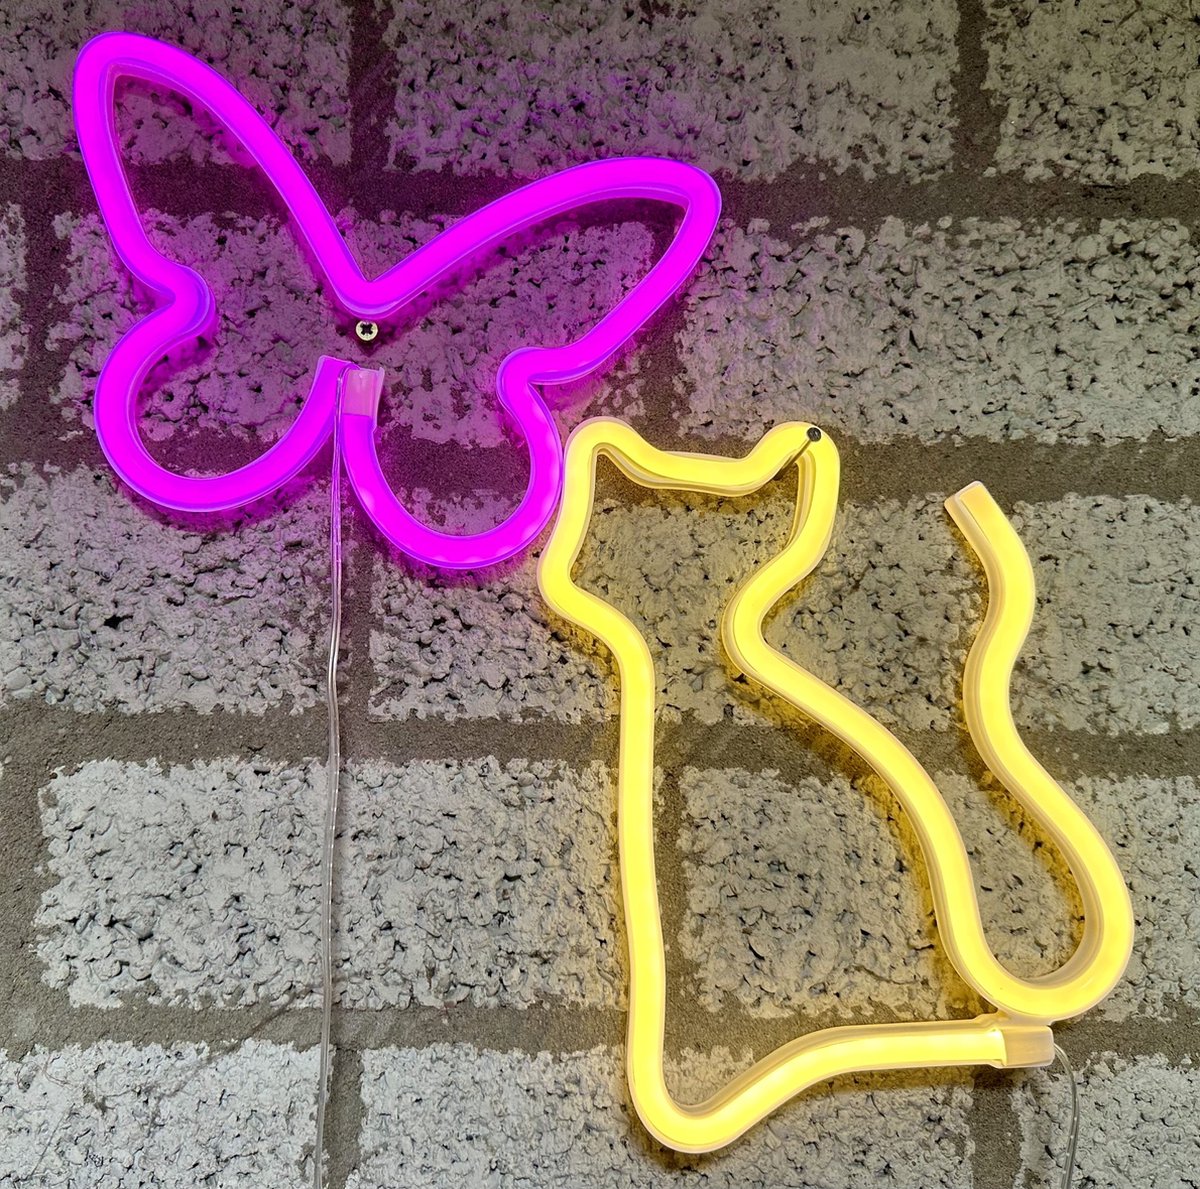 LED vlinder en kat met neonlicht - Set van 2 stuks – roze en geel neon licht - Op batterijen en USB - hoogte vlinder 22.5 x 16 x 2 cm - hoogte kat 17 x 1.5 x 23.5 cm - Wandlamp - Sfeerlamp - Decoratieve verlichting - Woonaccessoires